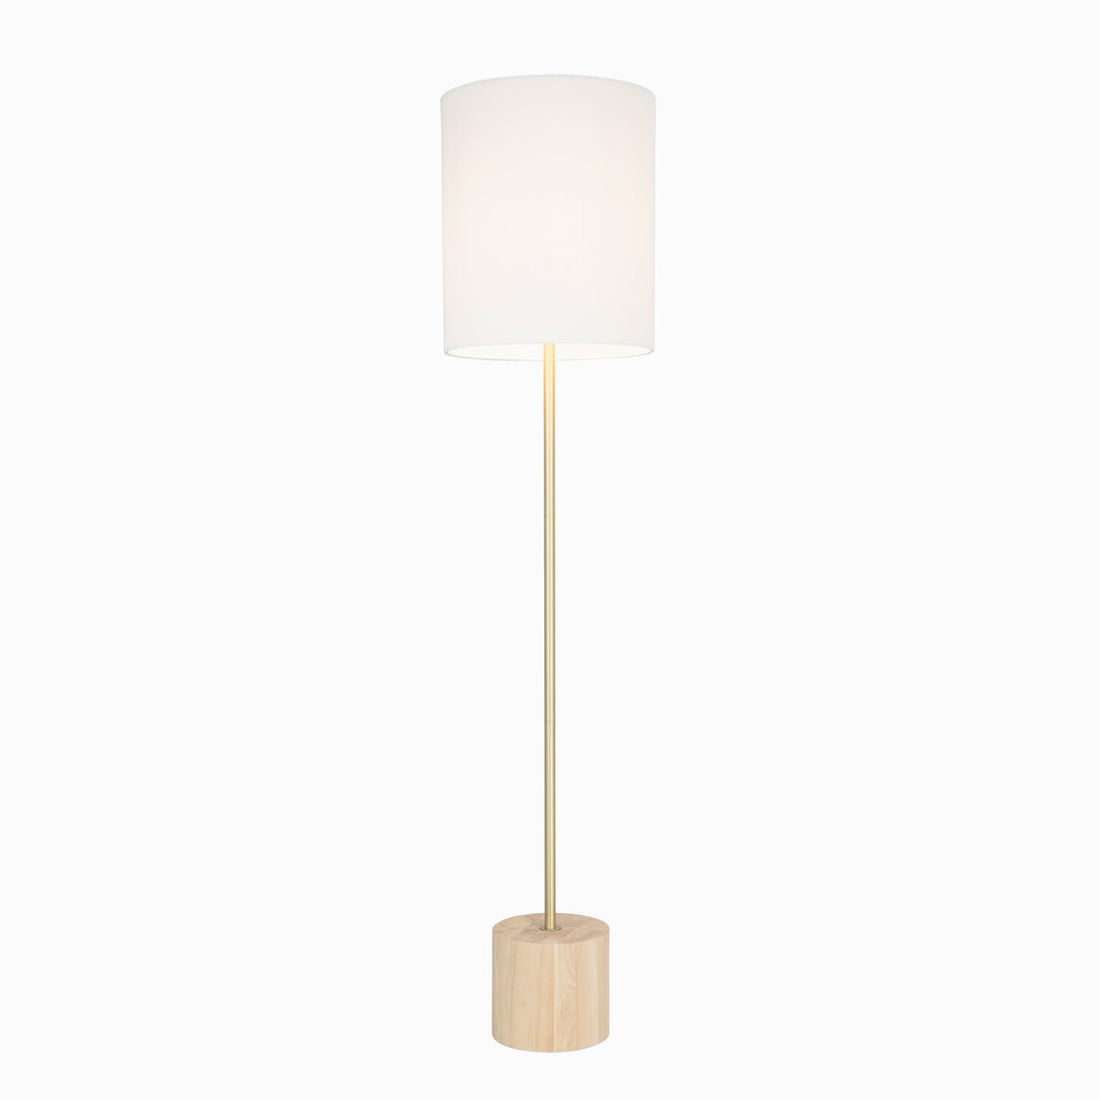 Flemington Timber and White Modern Floor Lamp